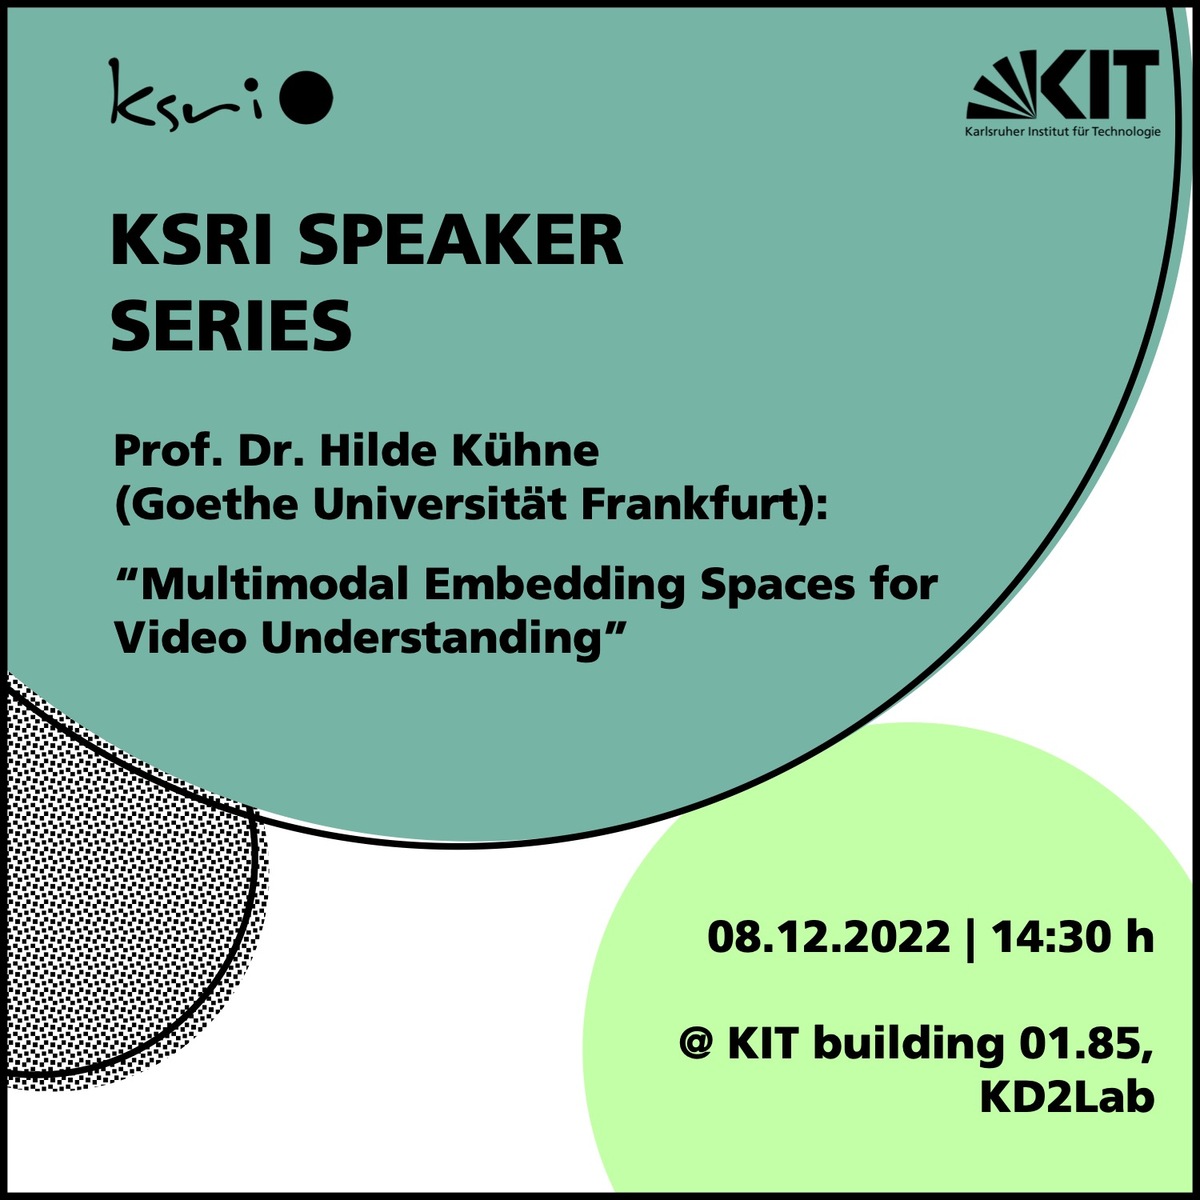 Speaker Series with Prof. Hilde Kühne on December 8th